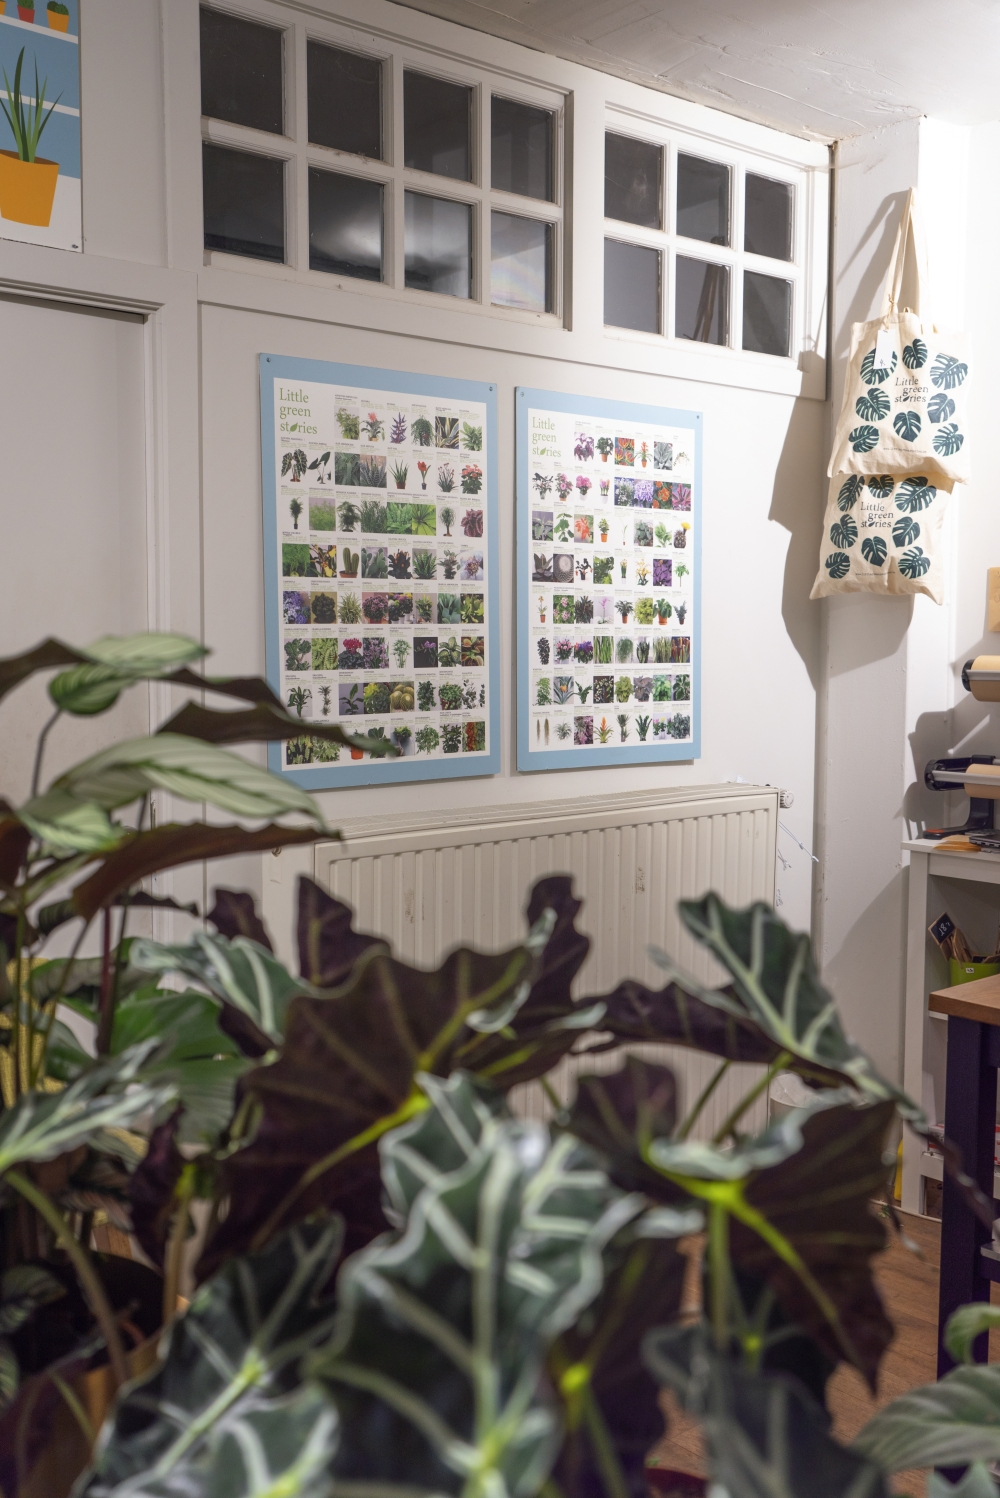 Urban Jungle Bloggers - Little Green Stories plant shop Ghent #urbanjunglebloggers #plantshop